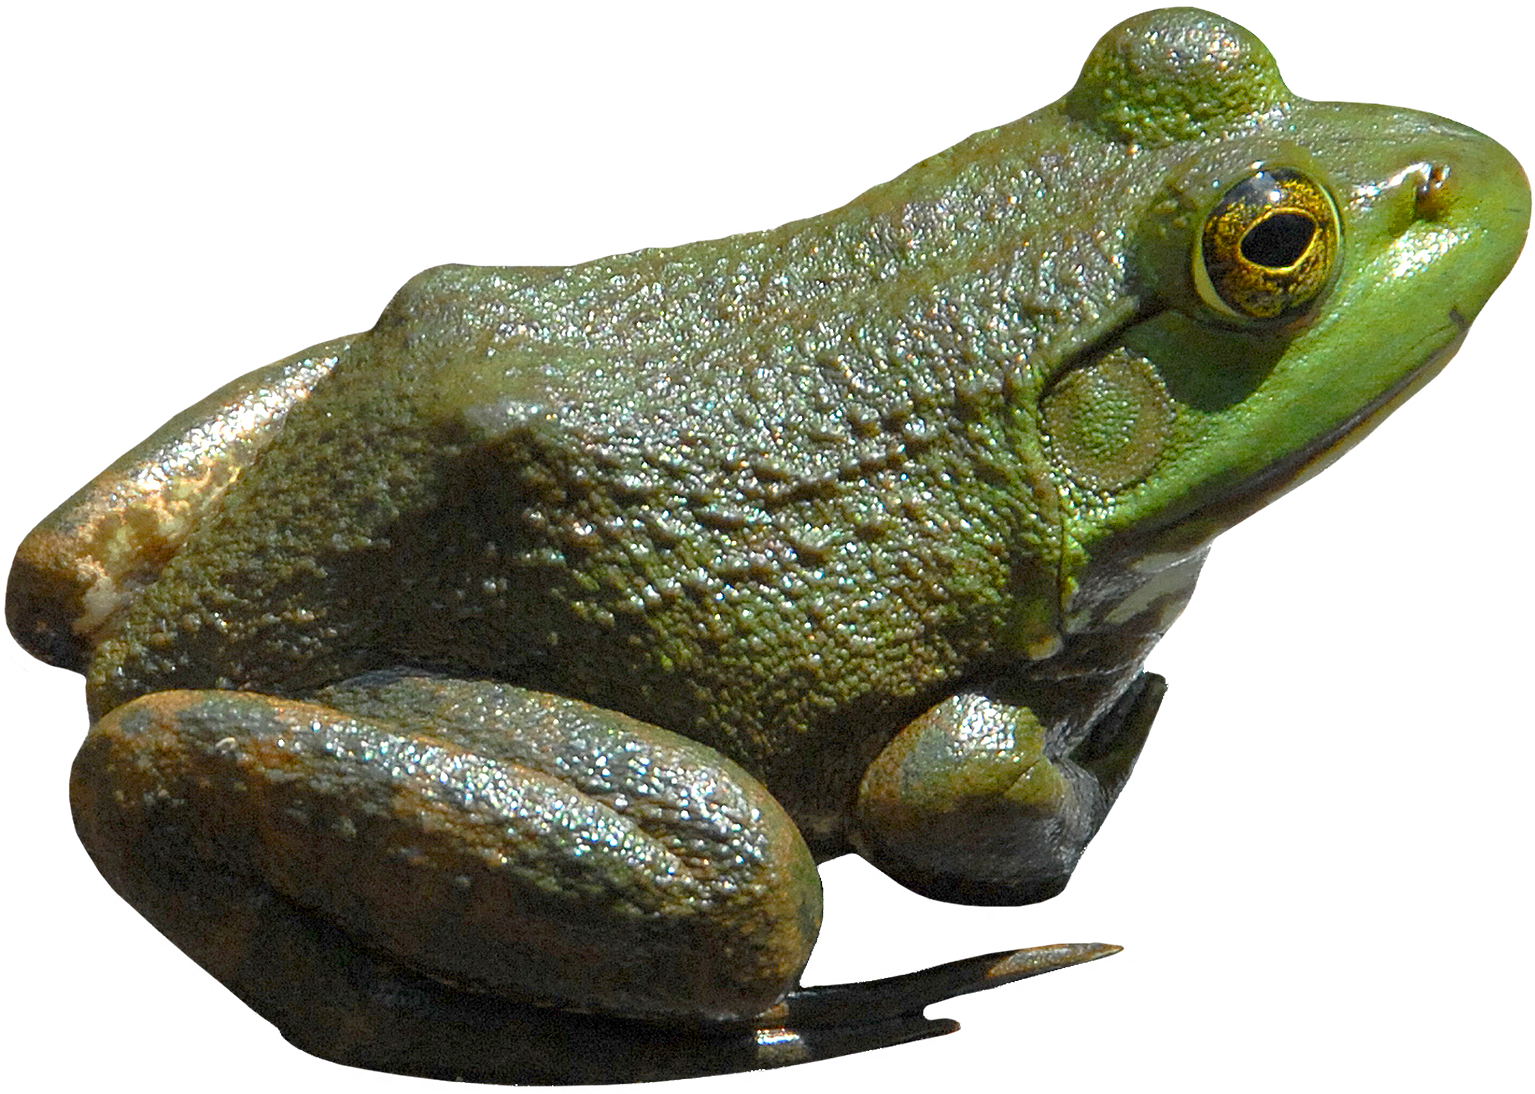 Frog Transparent PNG Image